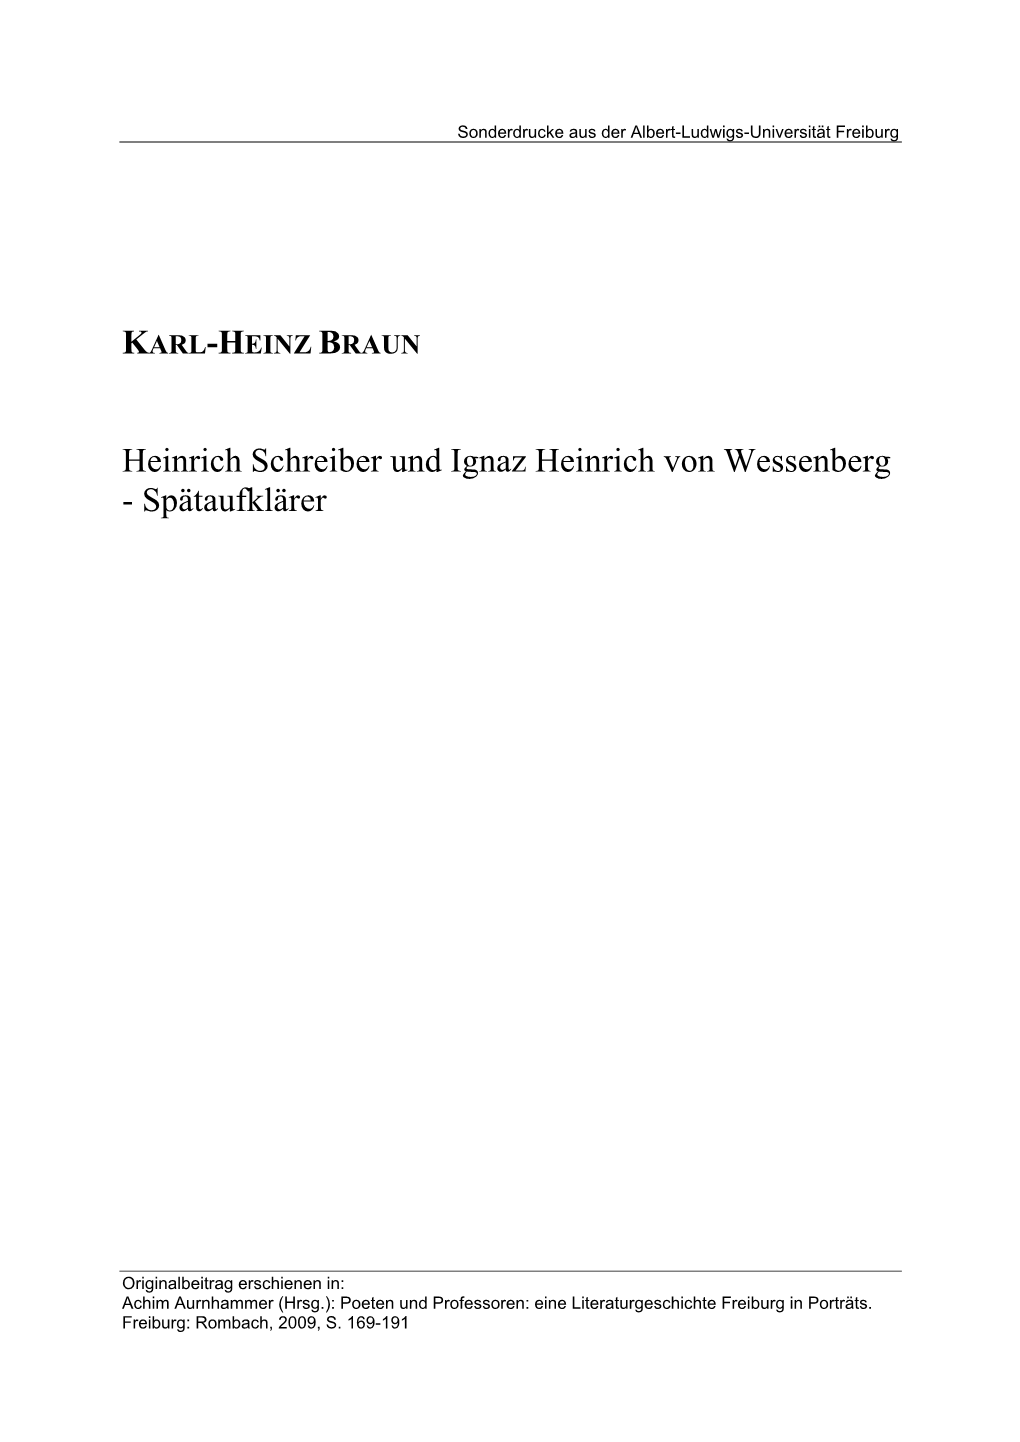 Heinrich Schreiber Und Ignaz Heinrich Von Wessenberg - Spätaufklärer